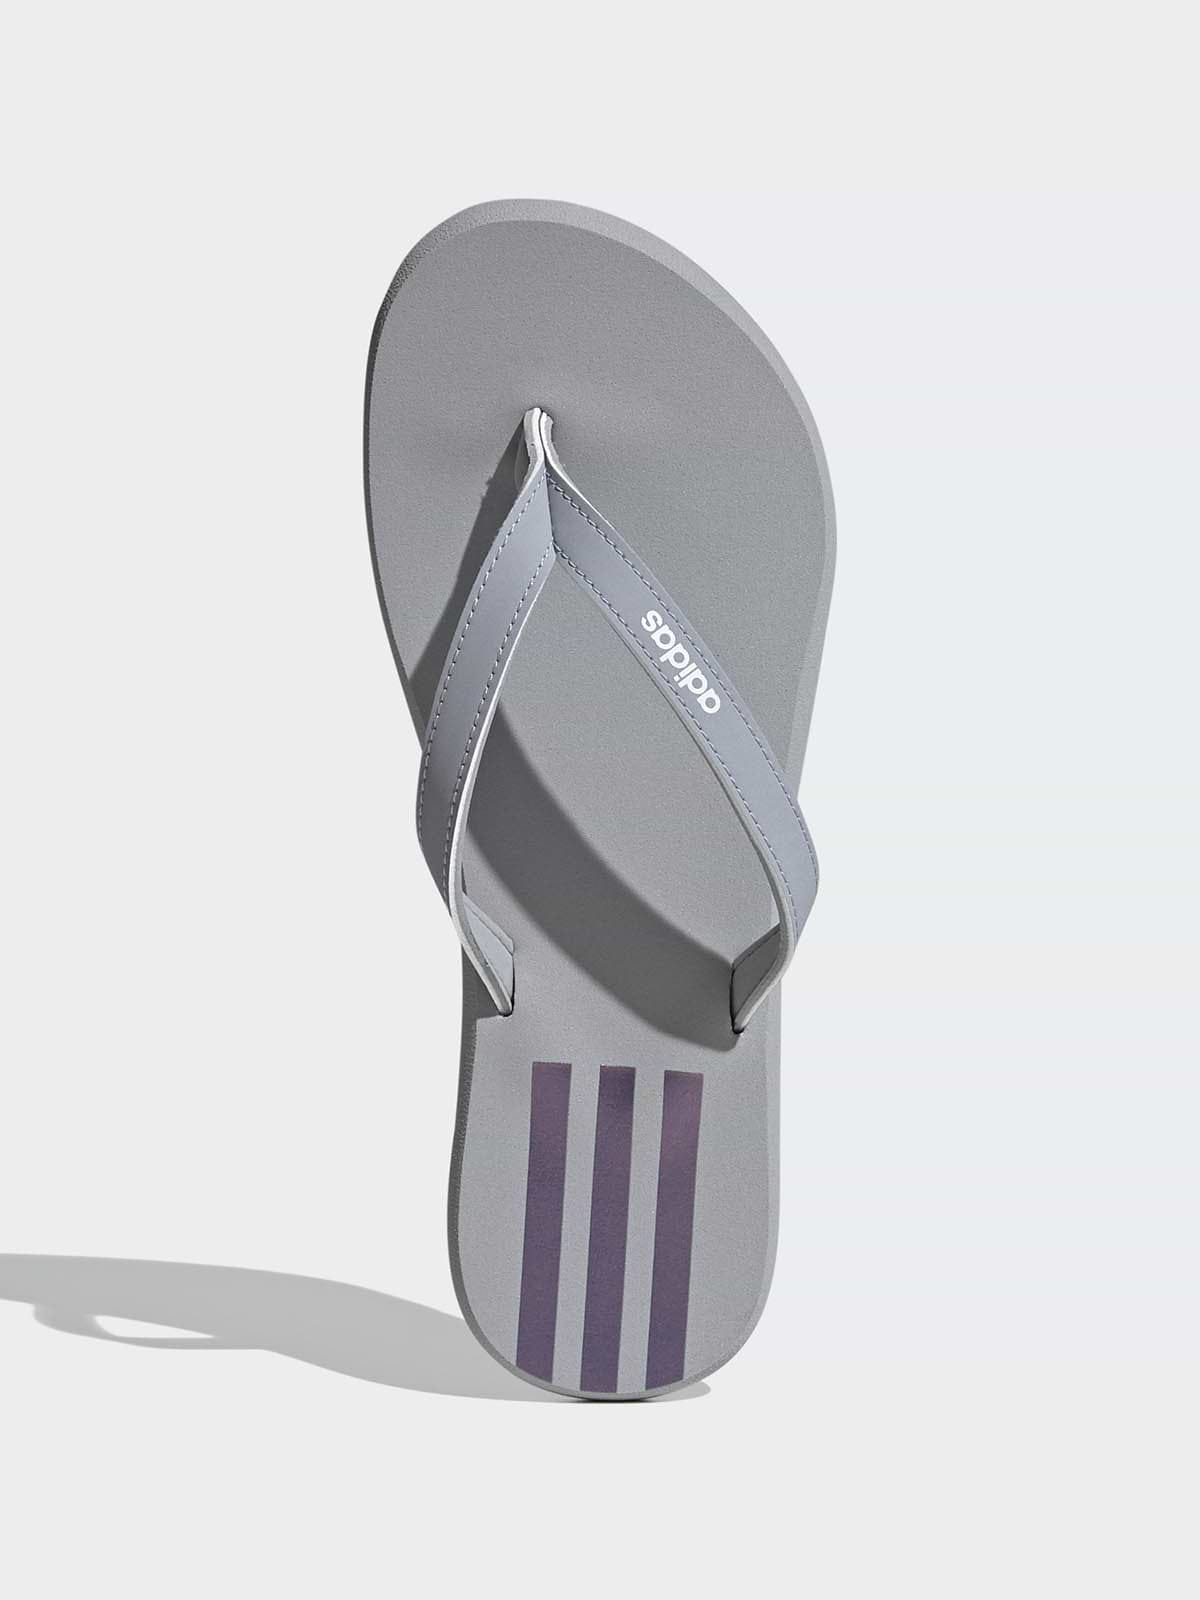 כפכפי אצבע עם הדפס לוגו / יוניסקס- adidas performance|אדידס פרפורמנס